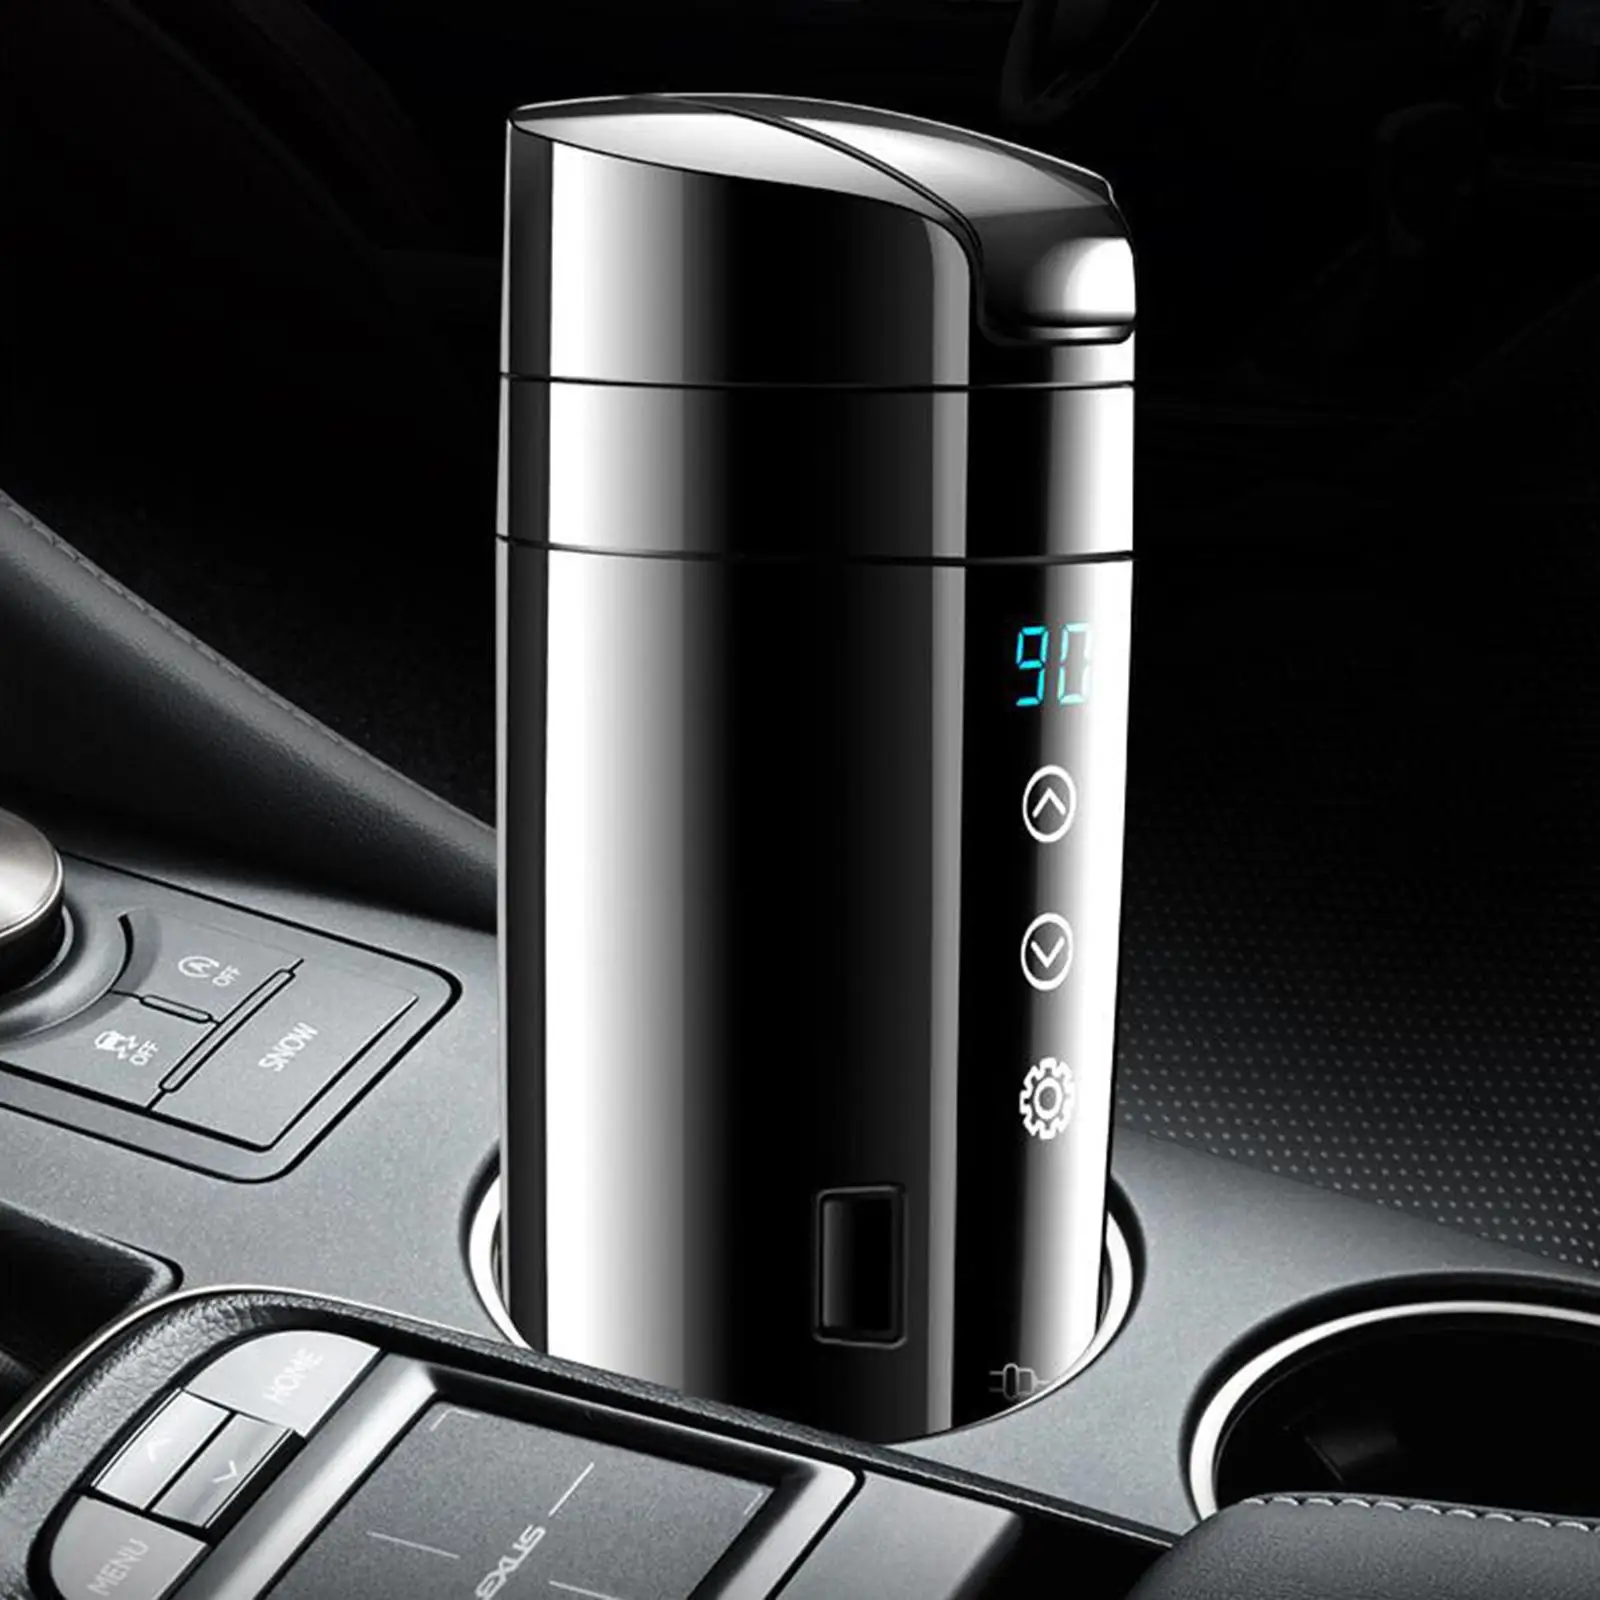 Portable 12V/24V Car Kettle Boiler Temperature Display Heating for Milk